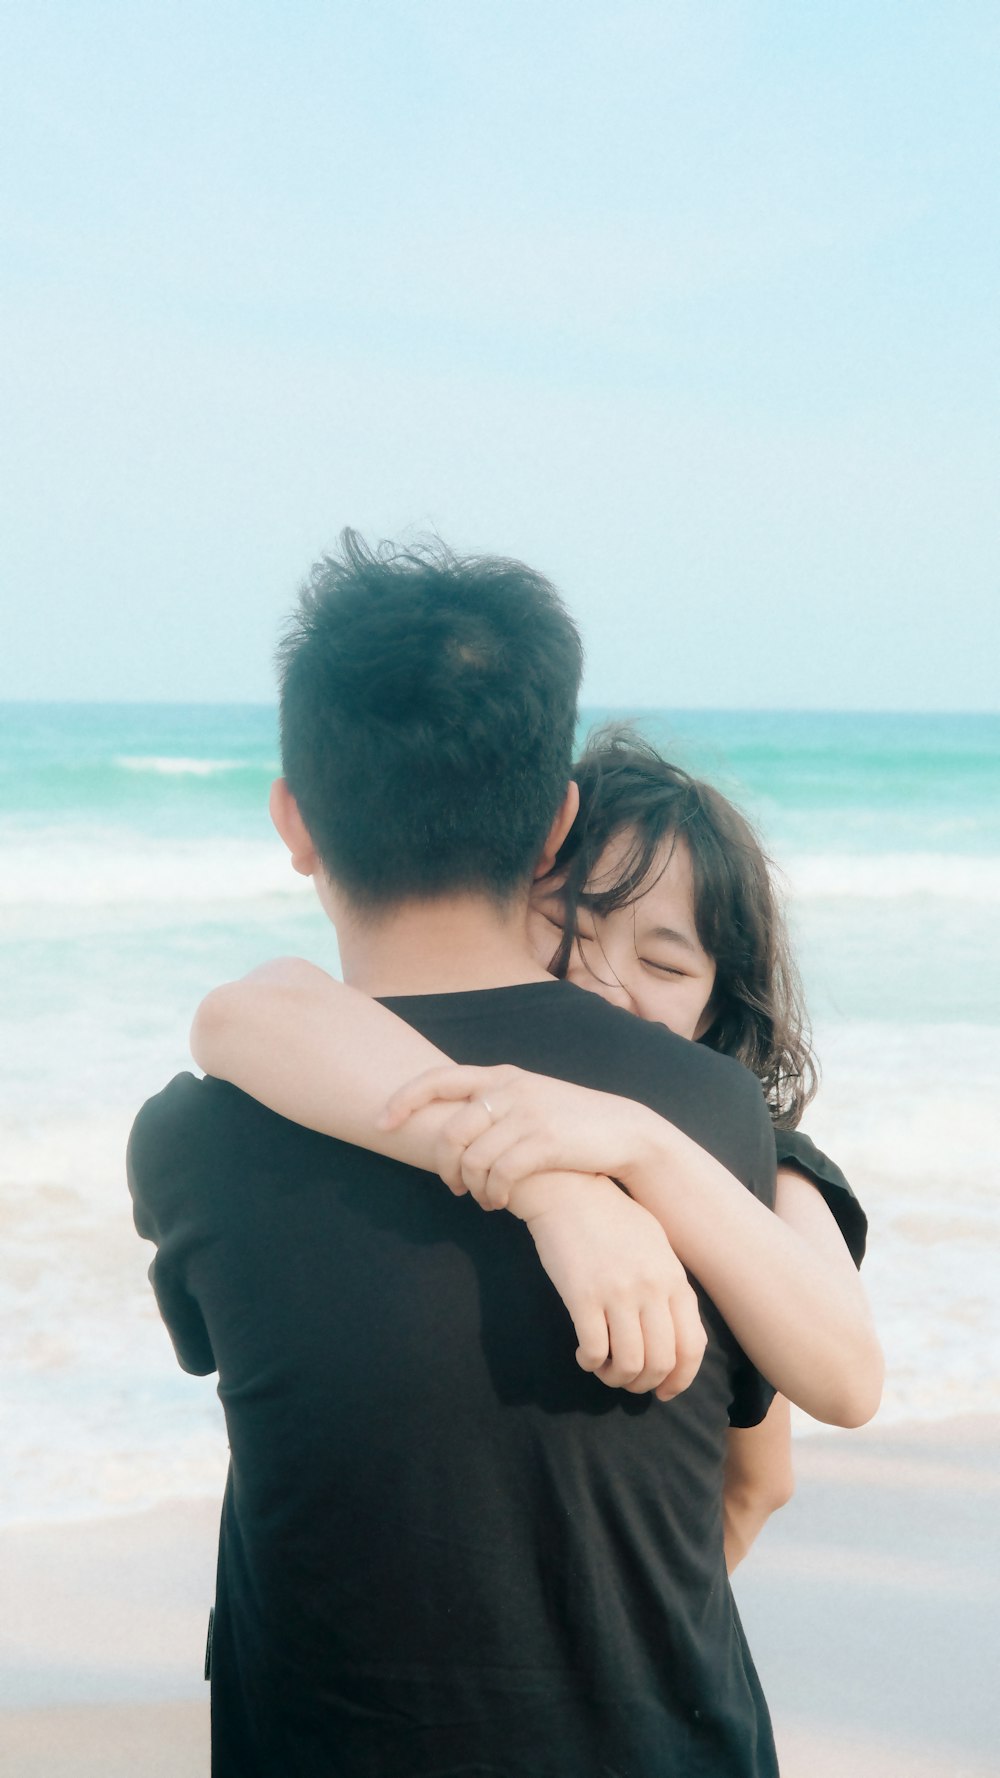 a man and a woman hug on the beach